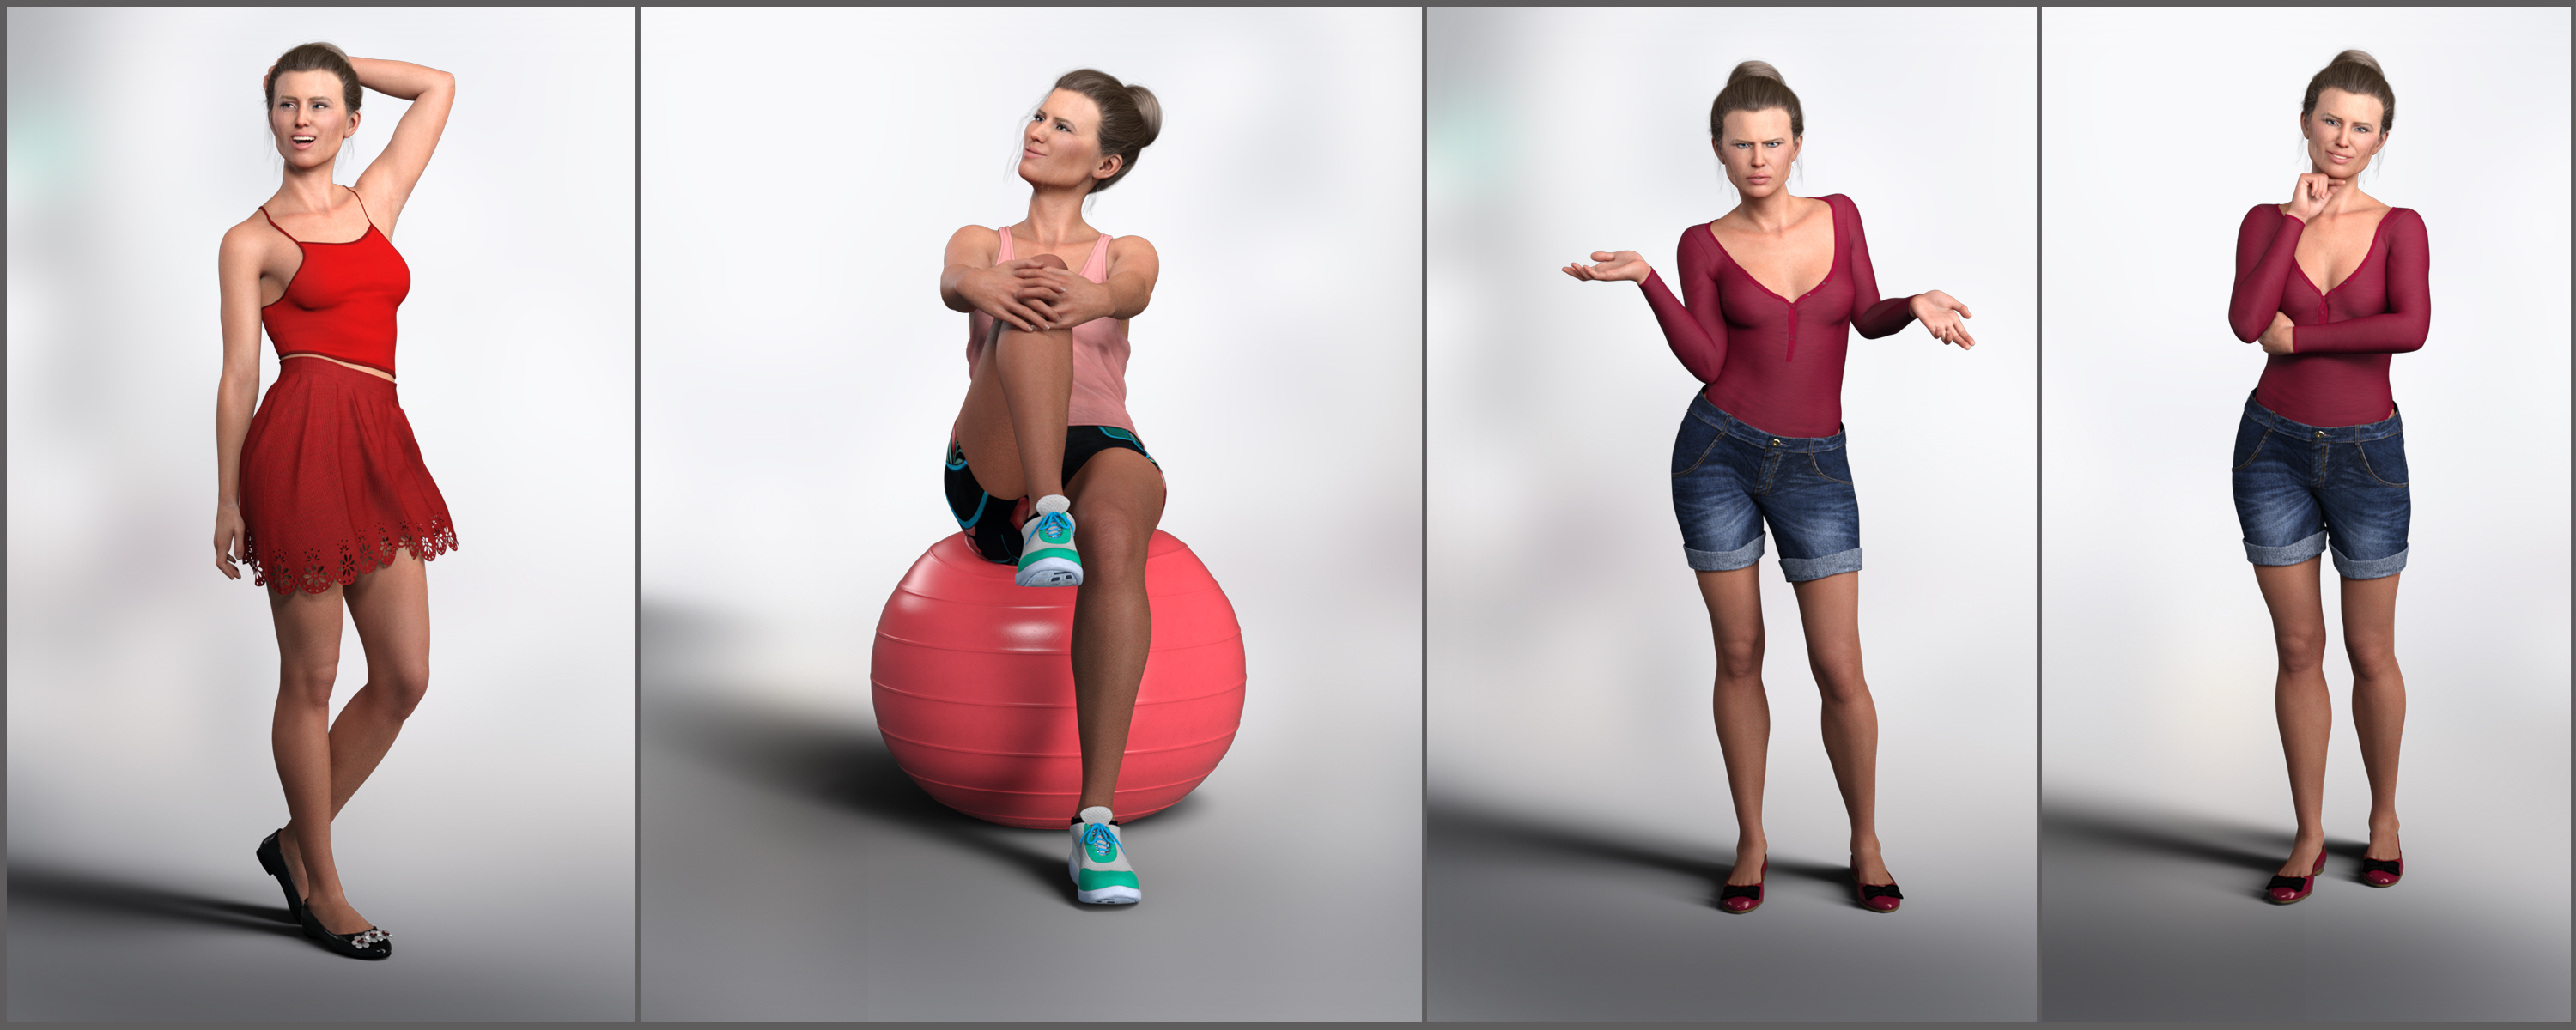 Z Juggling Life for Jenni 8 by: Zeddicuss, 3D Models by Daz 3D